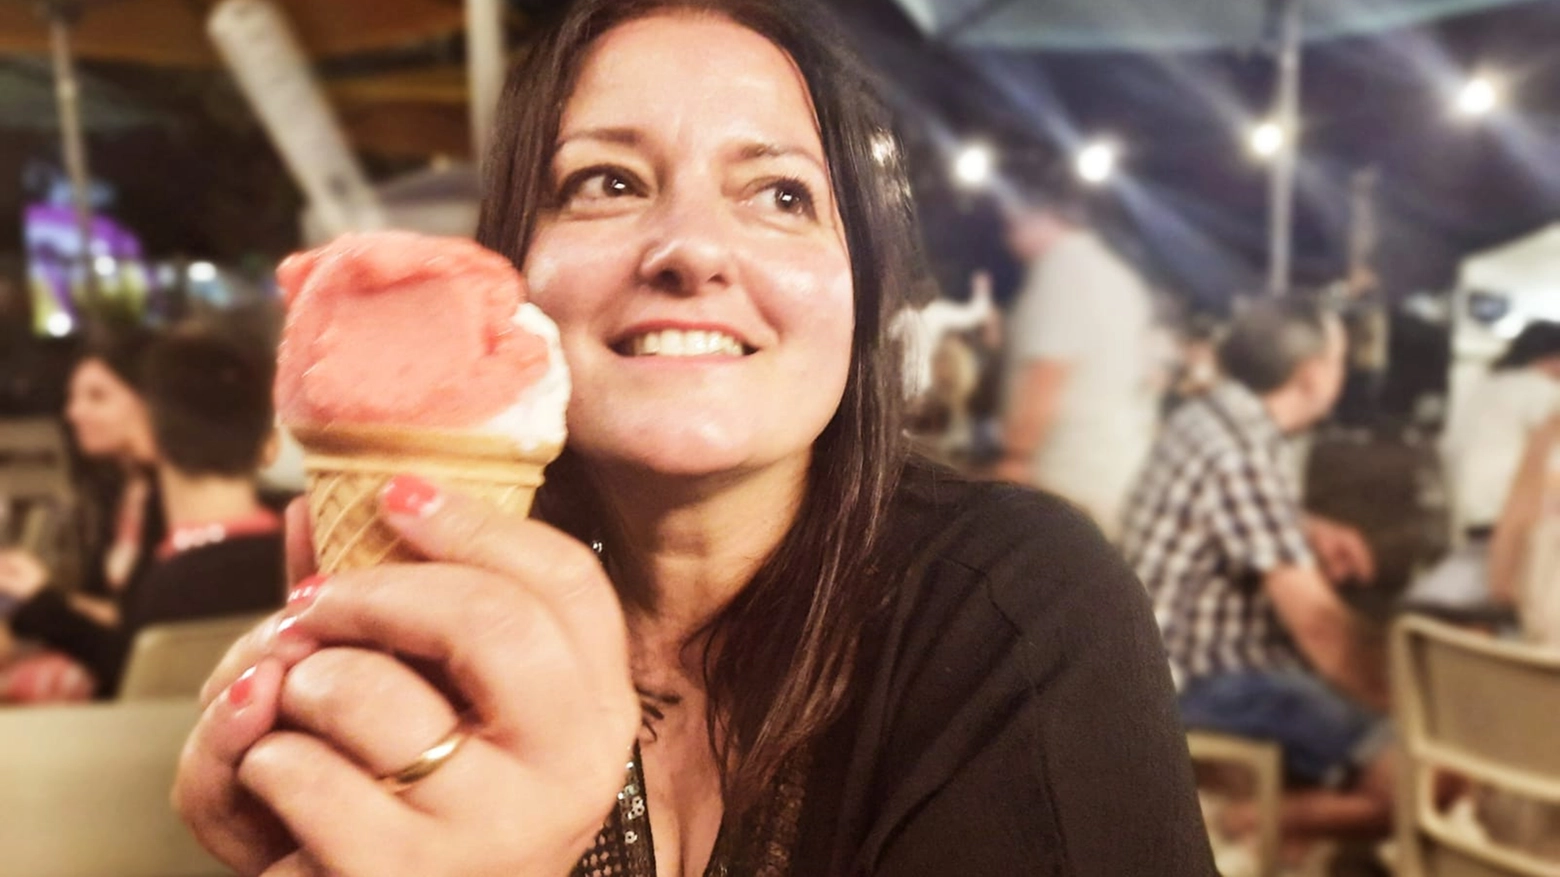 Fa discutere l'idea di vietare il gelato "notturno" in zona navigli a Milano